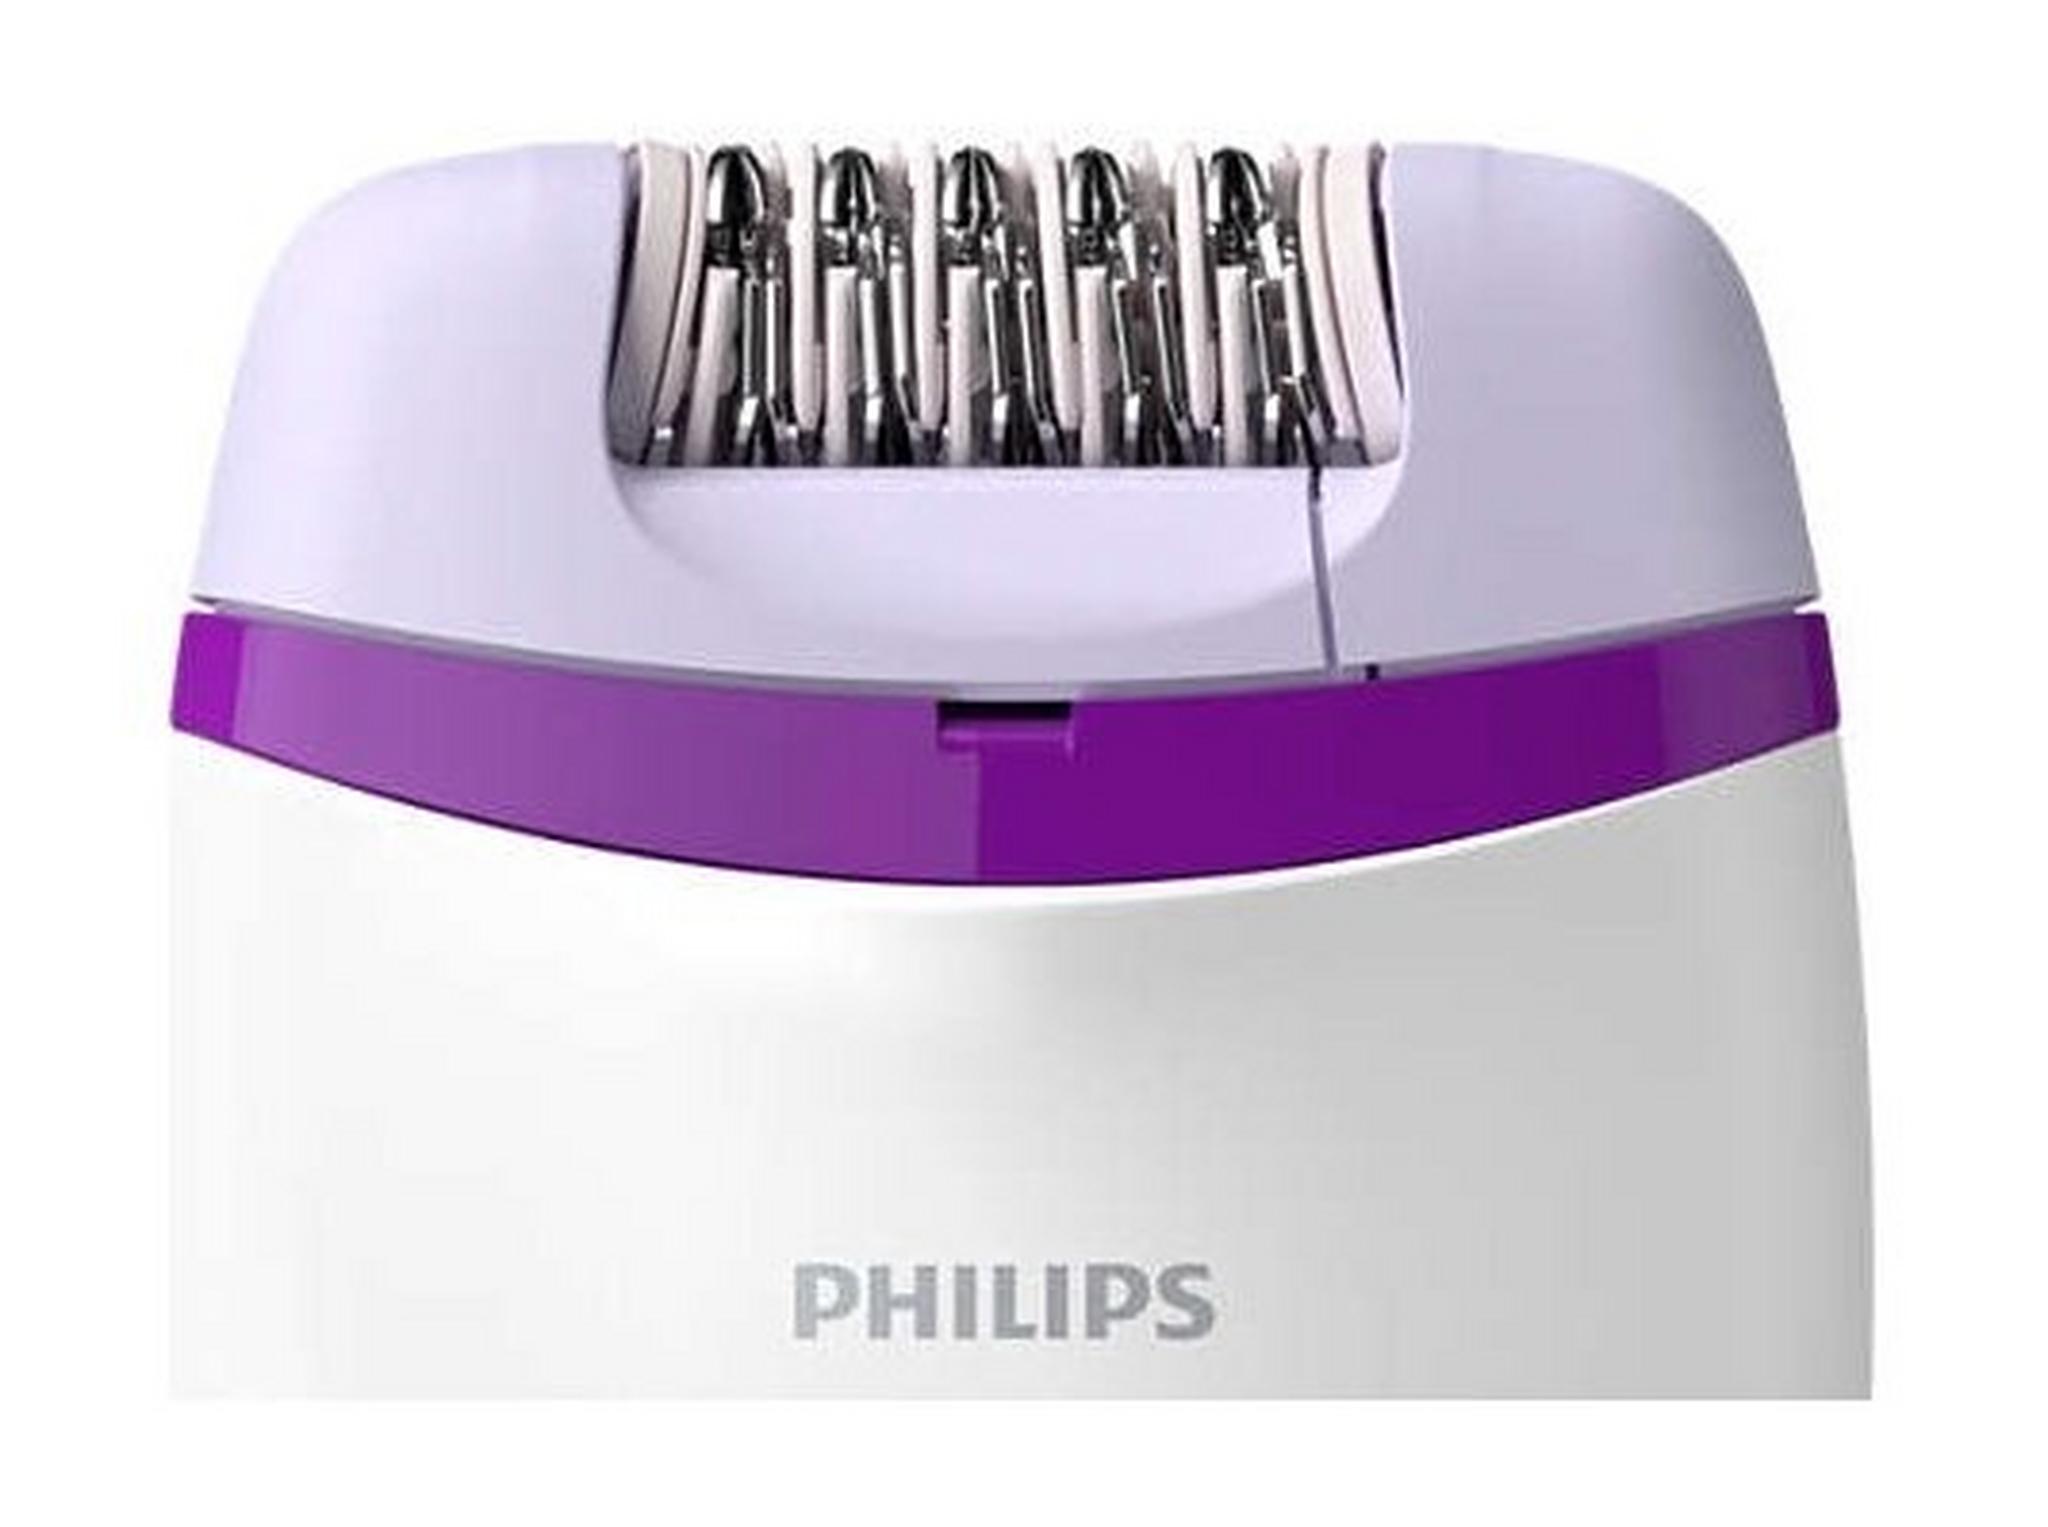 ماكينة إزالة الشعر السلكية فيليبس، حجم مدمج لحلاقة سهلة وناعمة لأسابيع، BRE225/01 - أبيض/بنفسجي